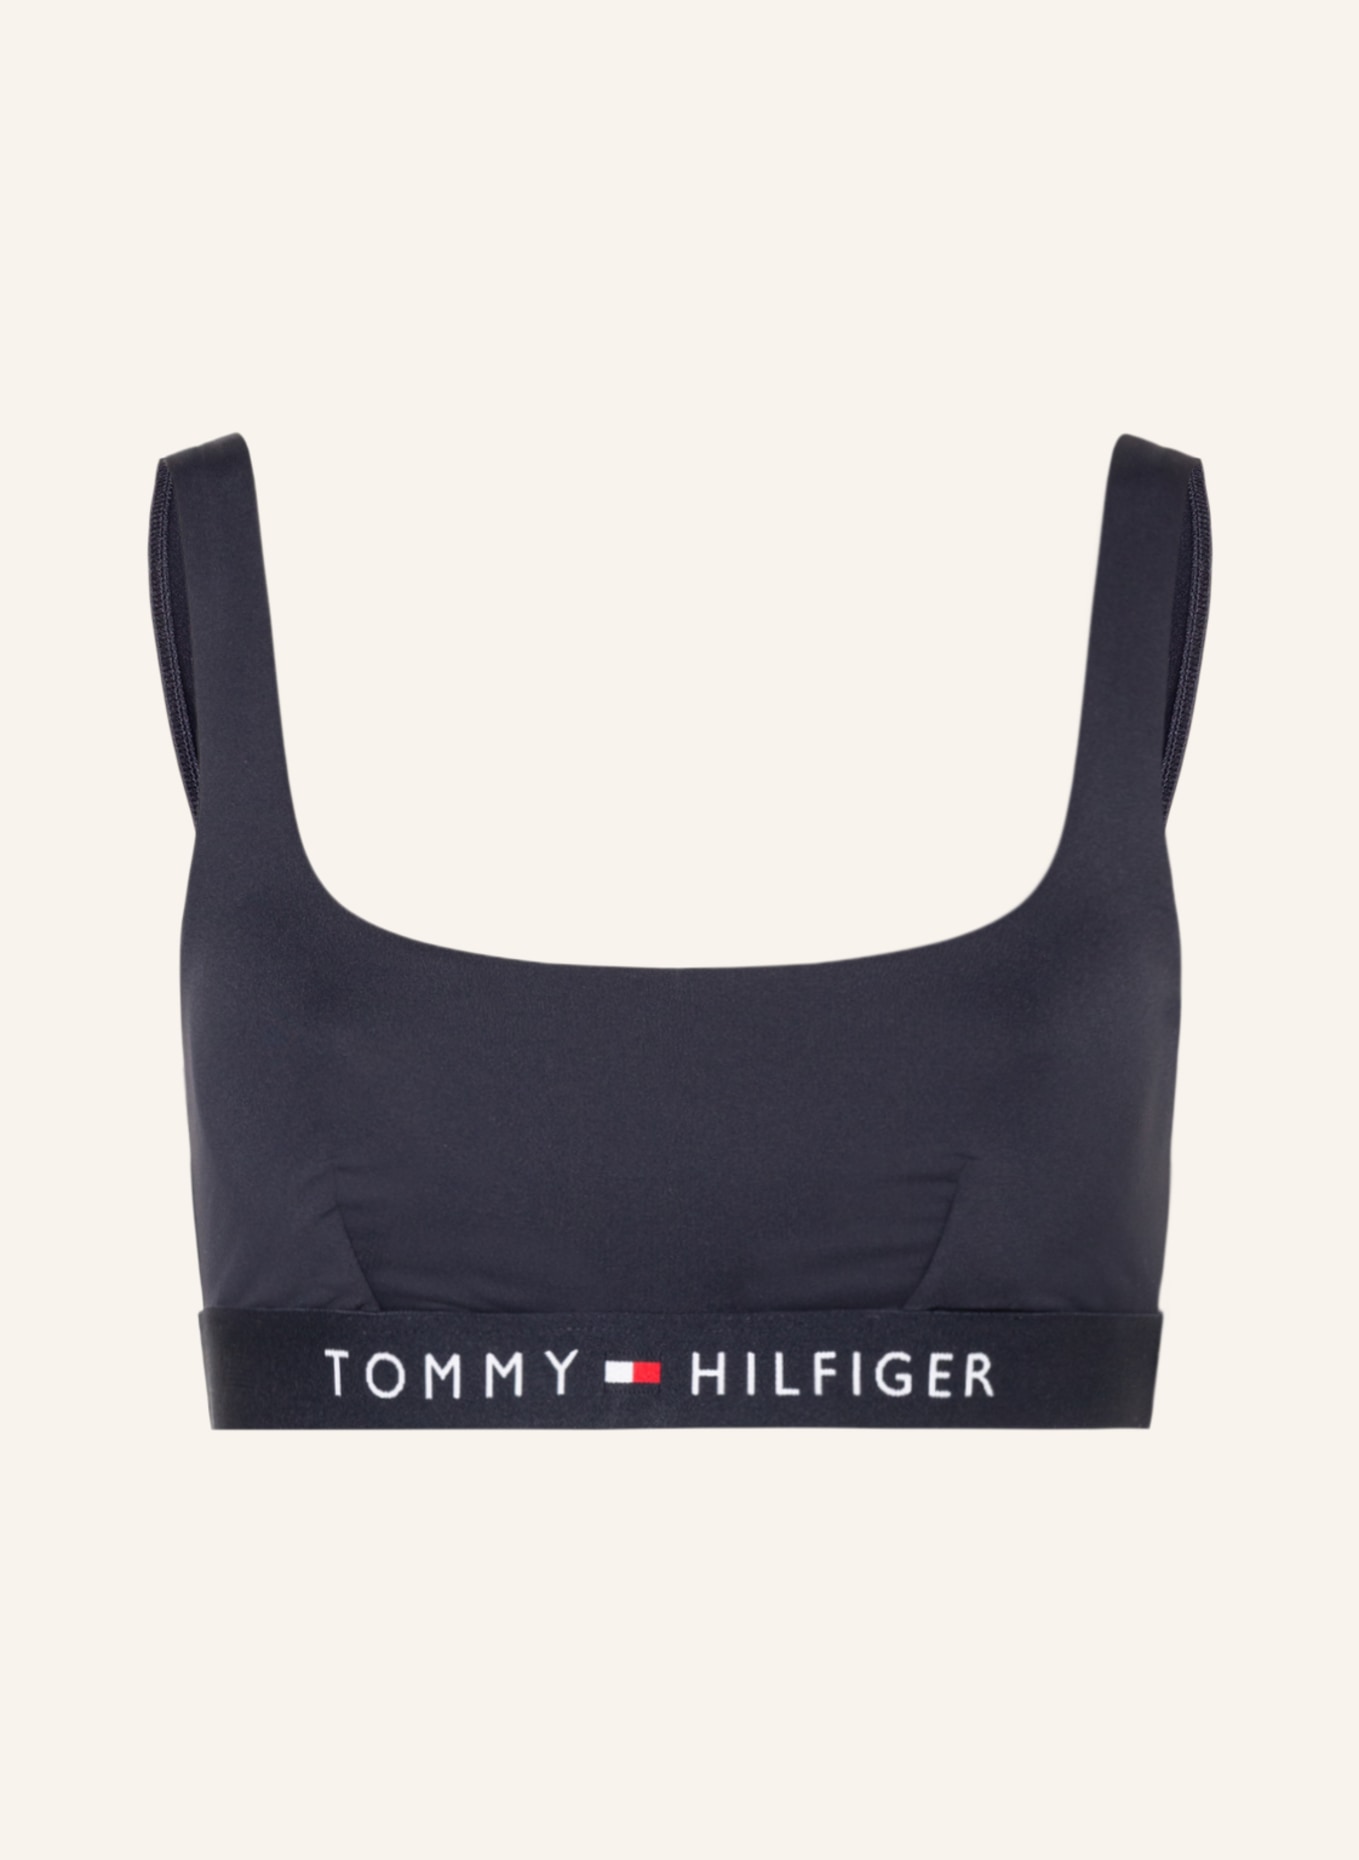 TOMMY HILFIGER Bustier-Bikini-Top, Farbe: DUNKELBLAU (Bild 1)